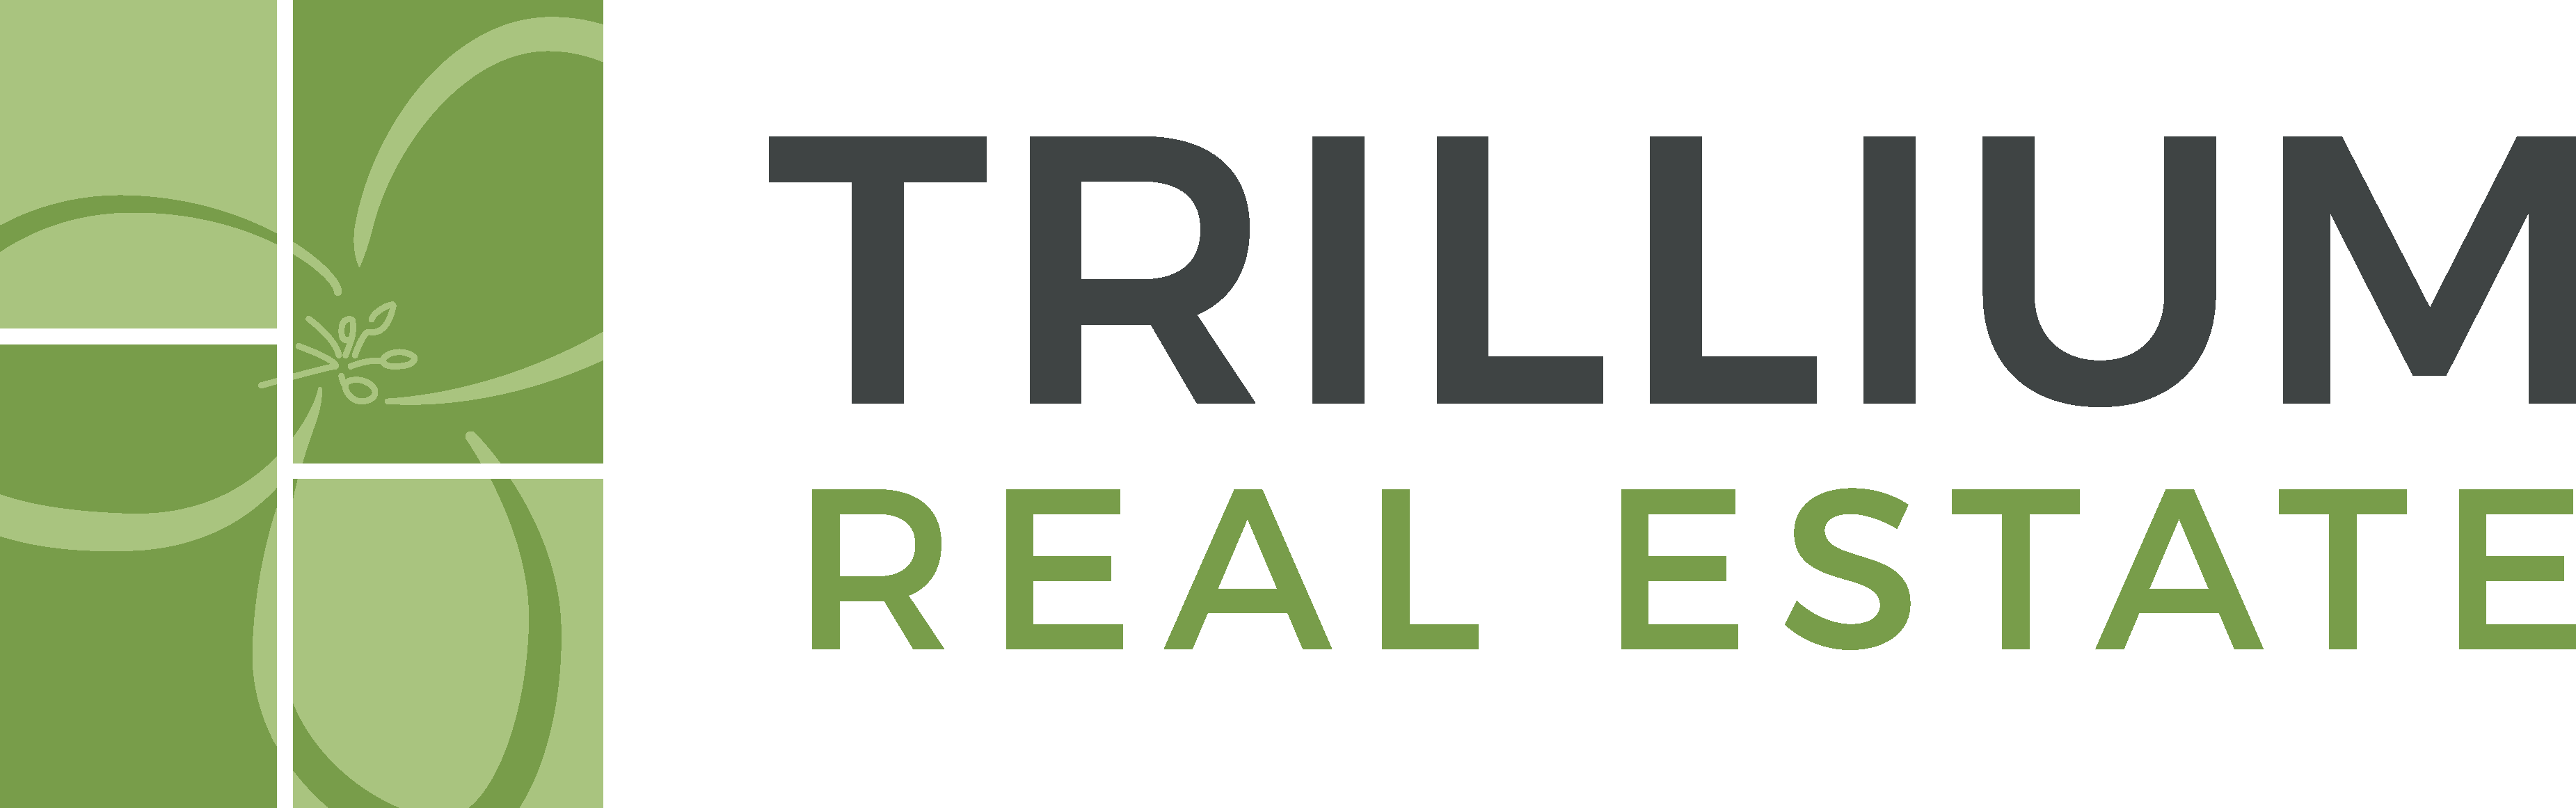 Trillium Real Estate